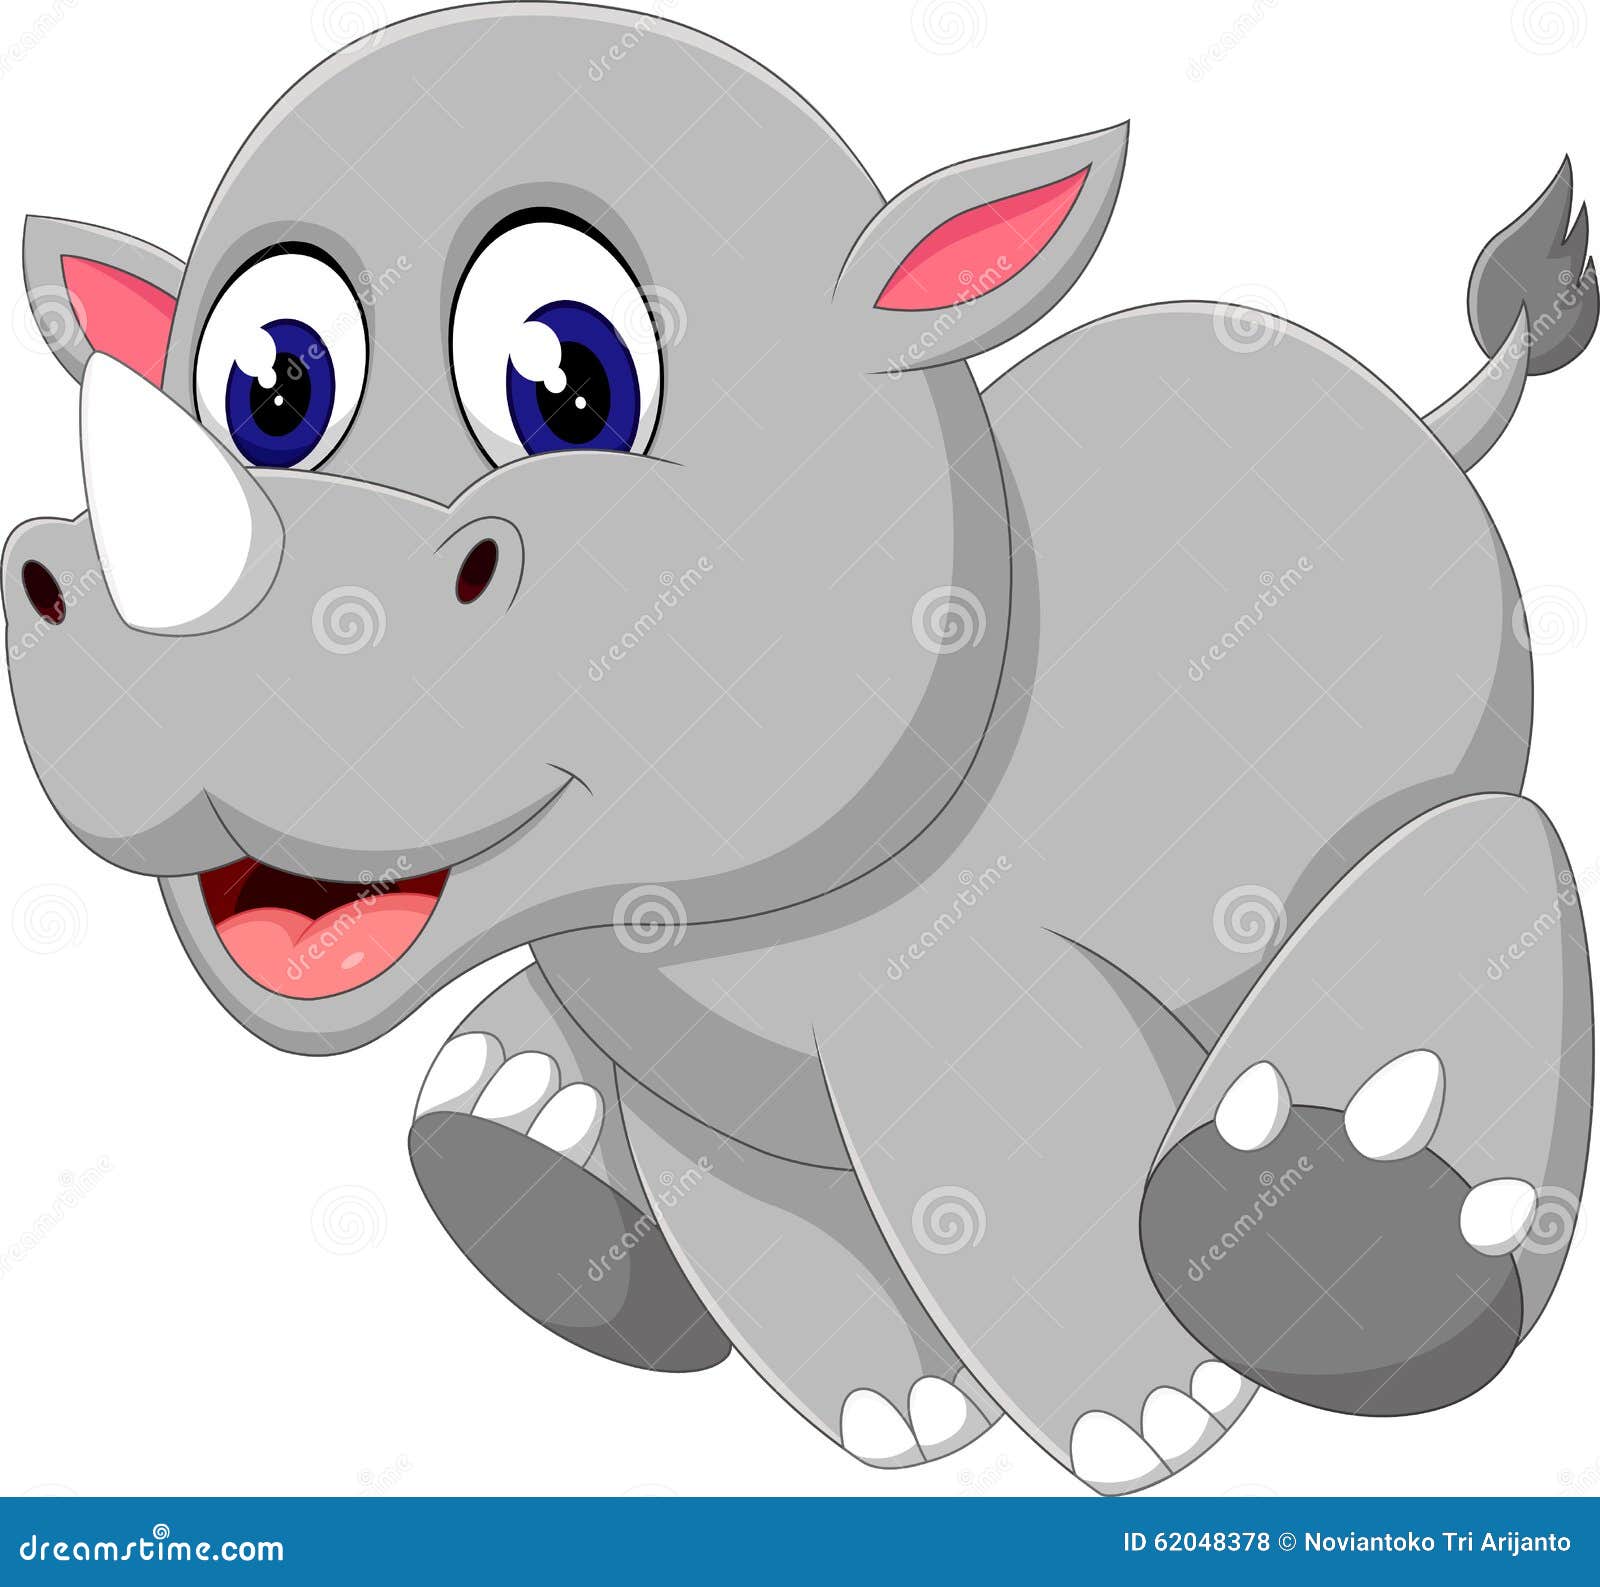 baby rhino clipart - photo #12